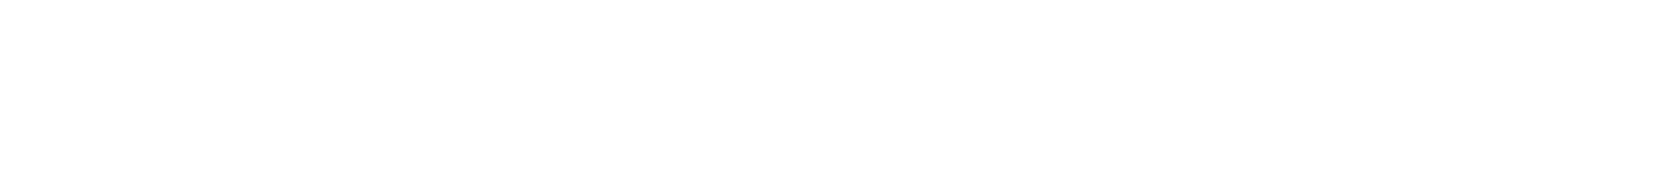 AF-S NIKKOR 85mm f/1.8G